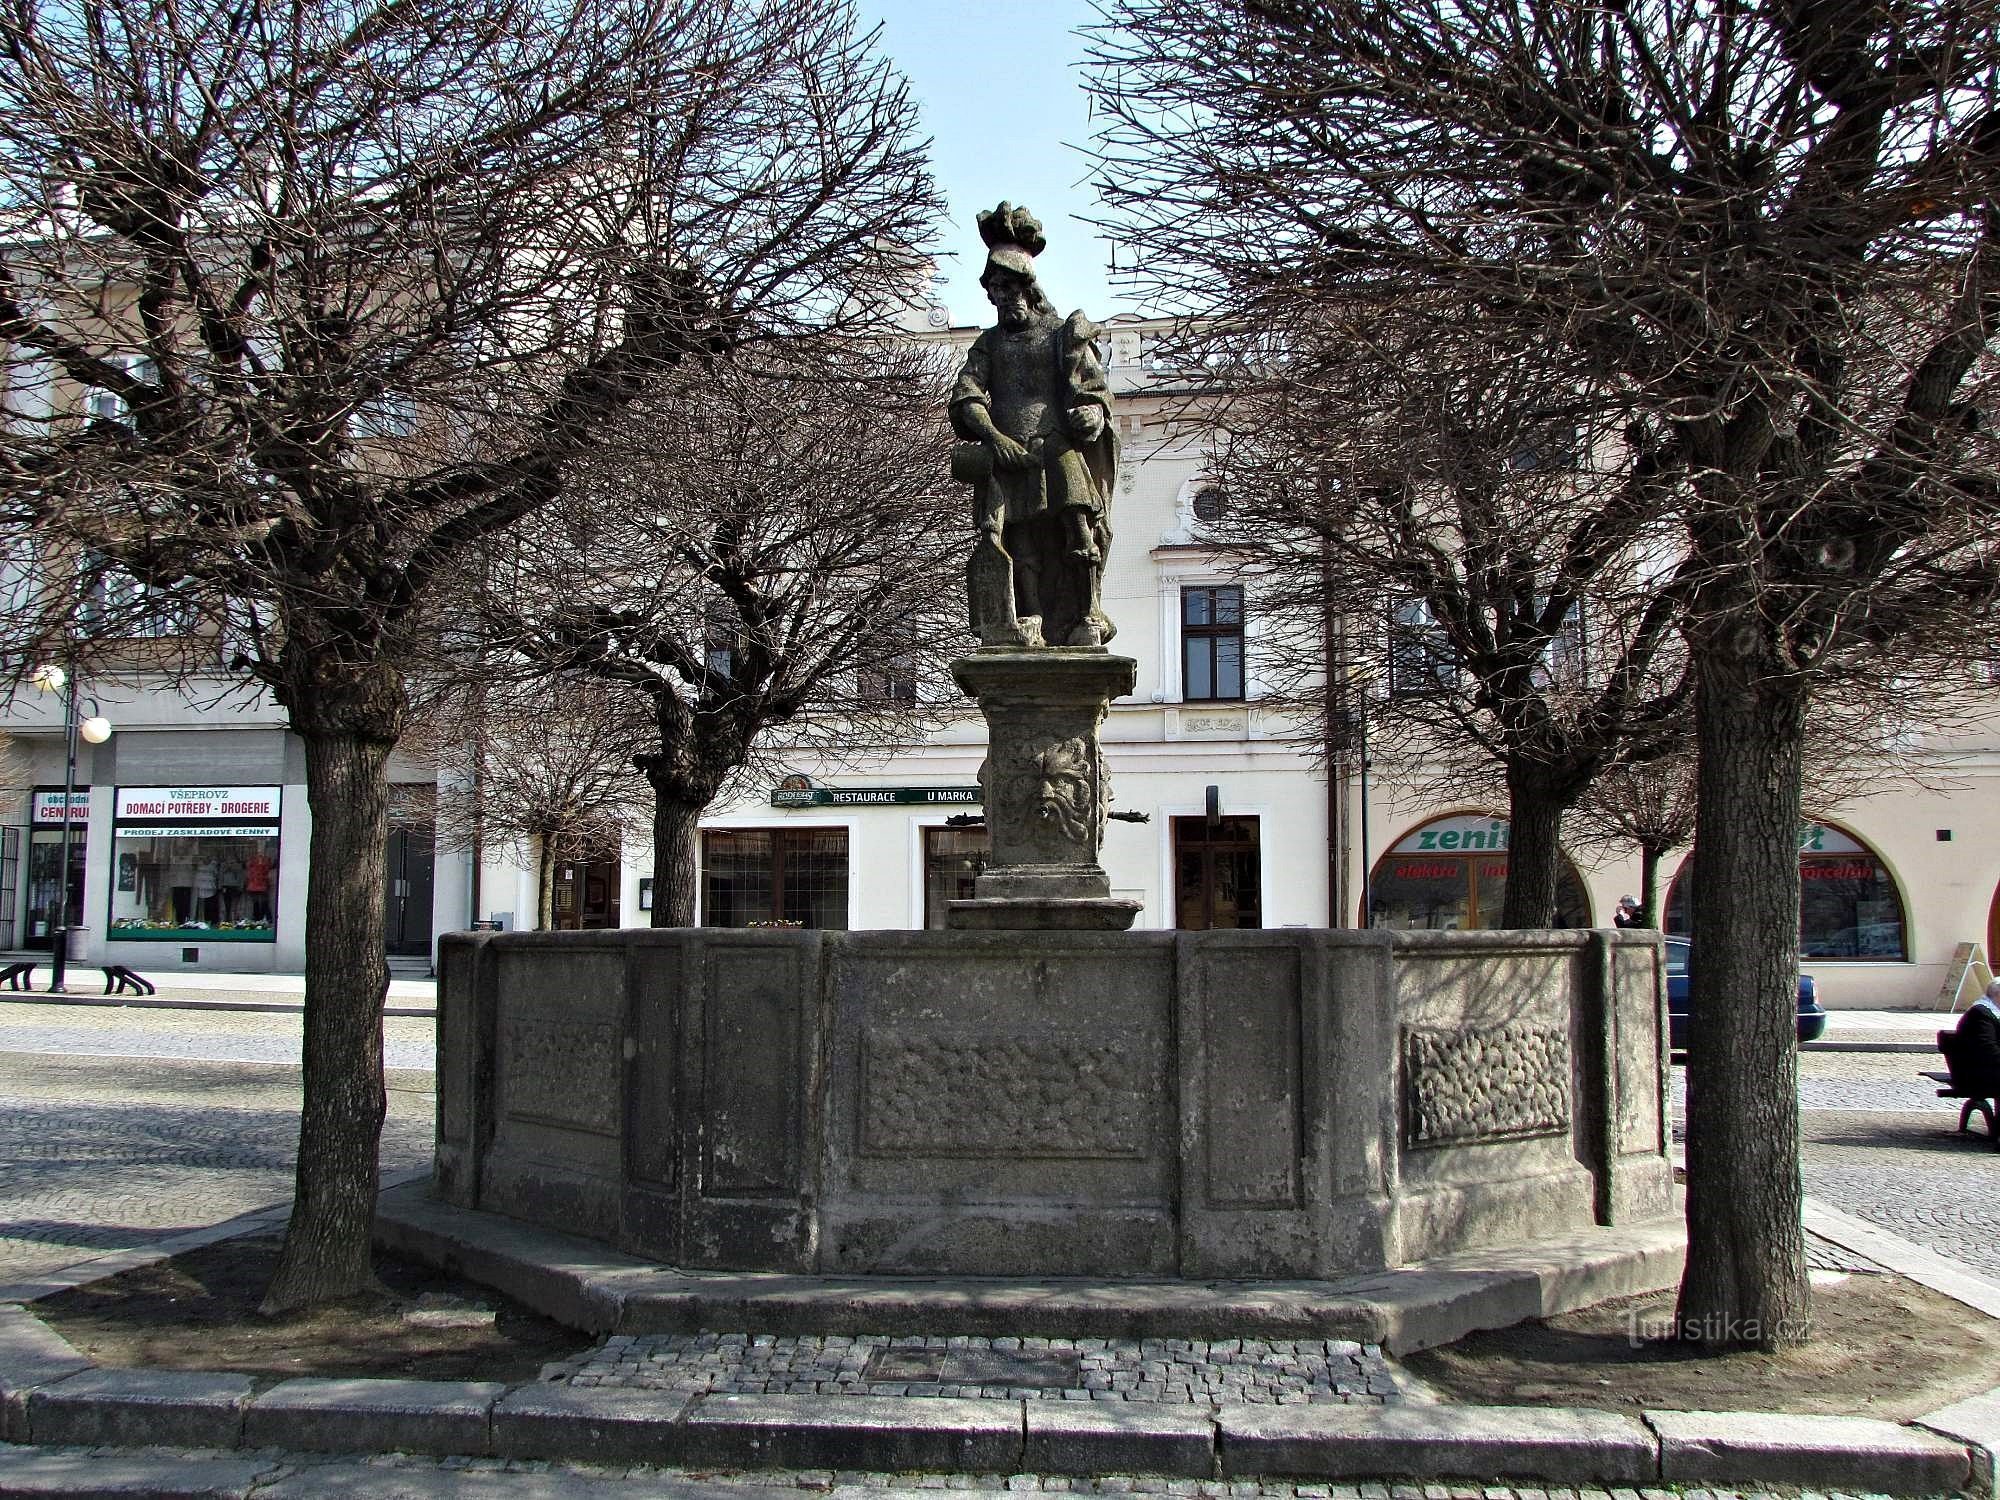 St. Florian's fountain